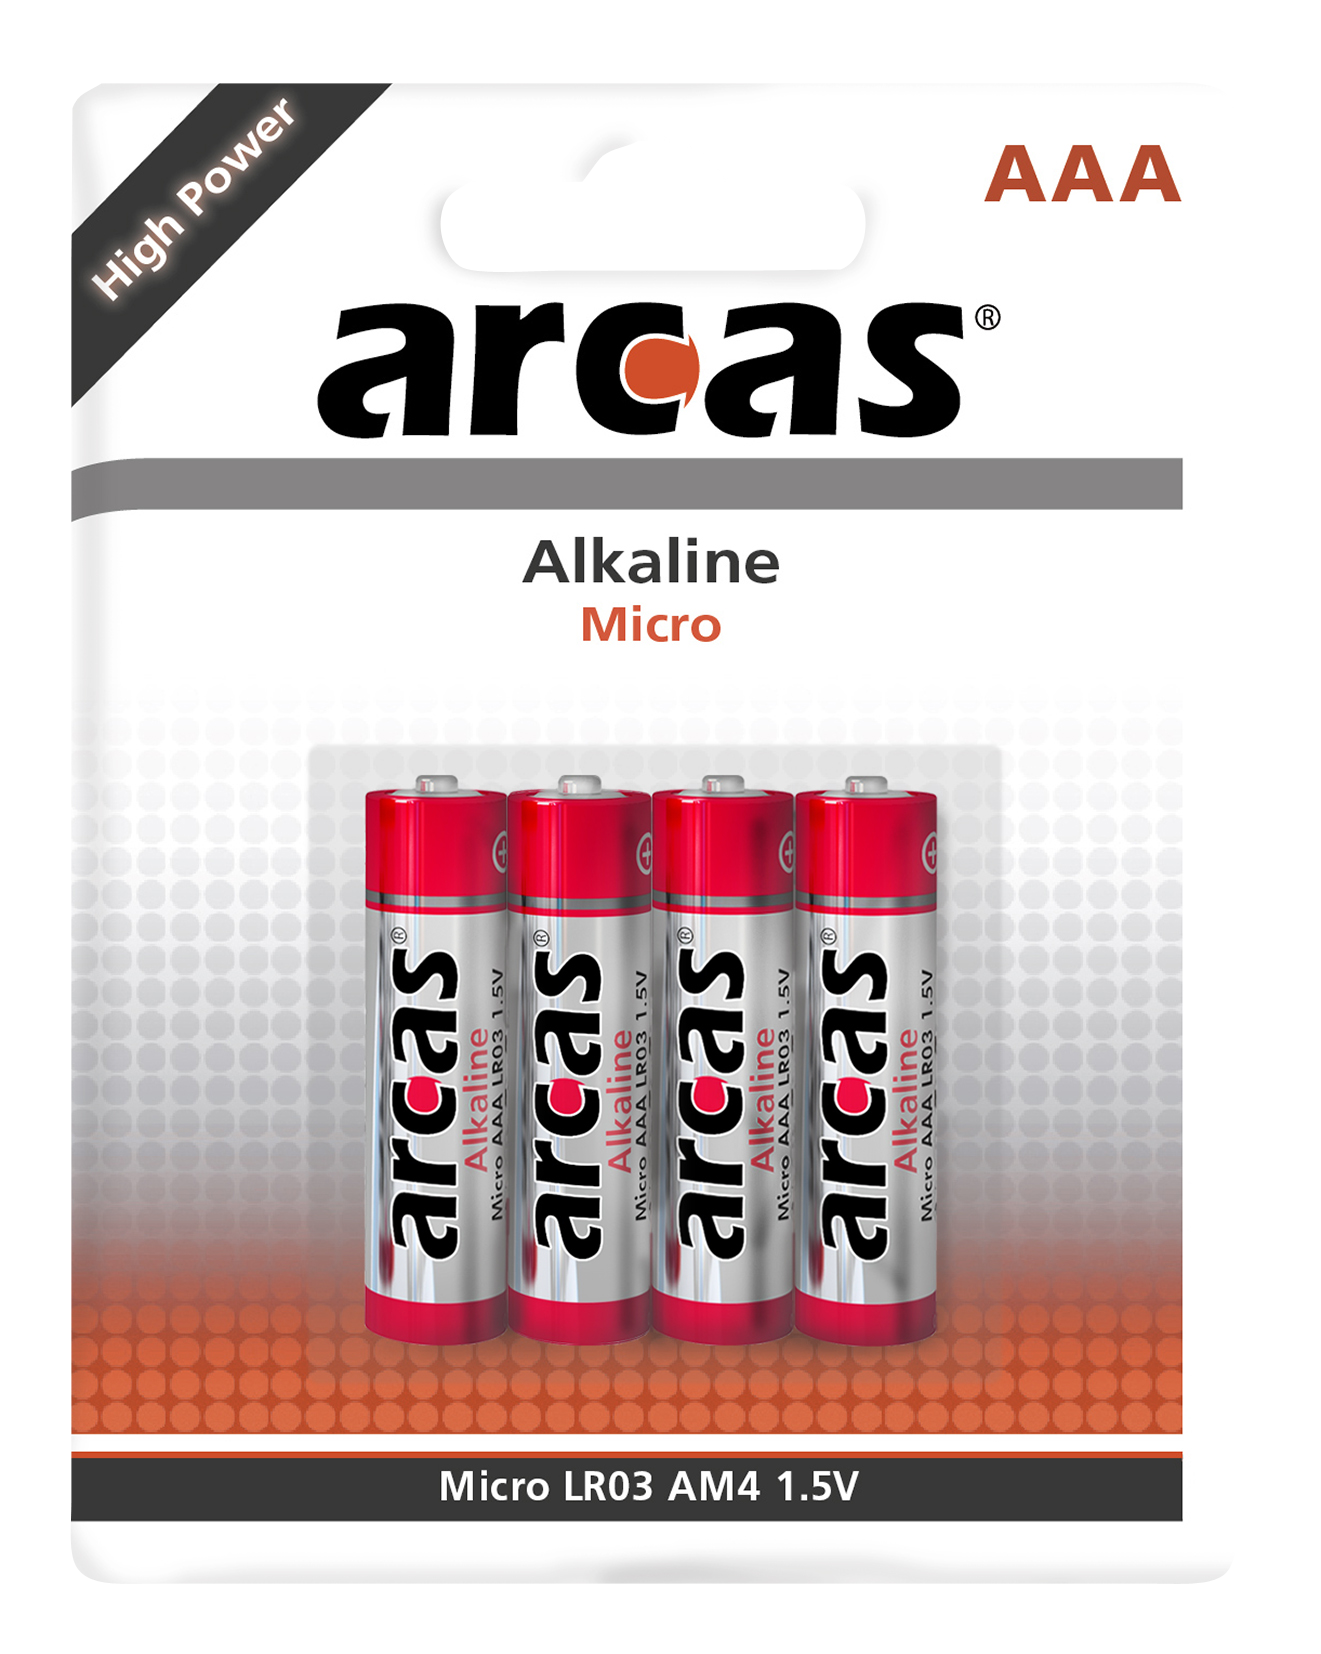 Micro-Batterie Alkaline 1,5V, Typ AAA/LR03, 4er-Pack